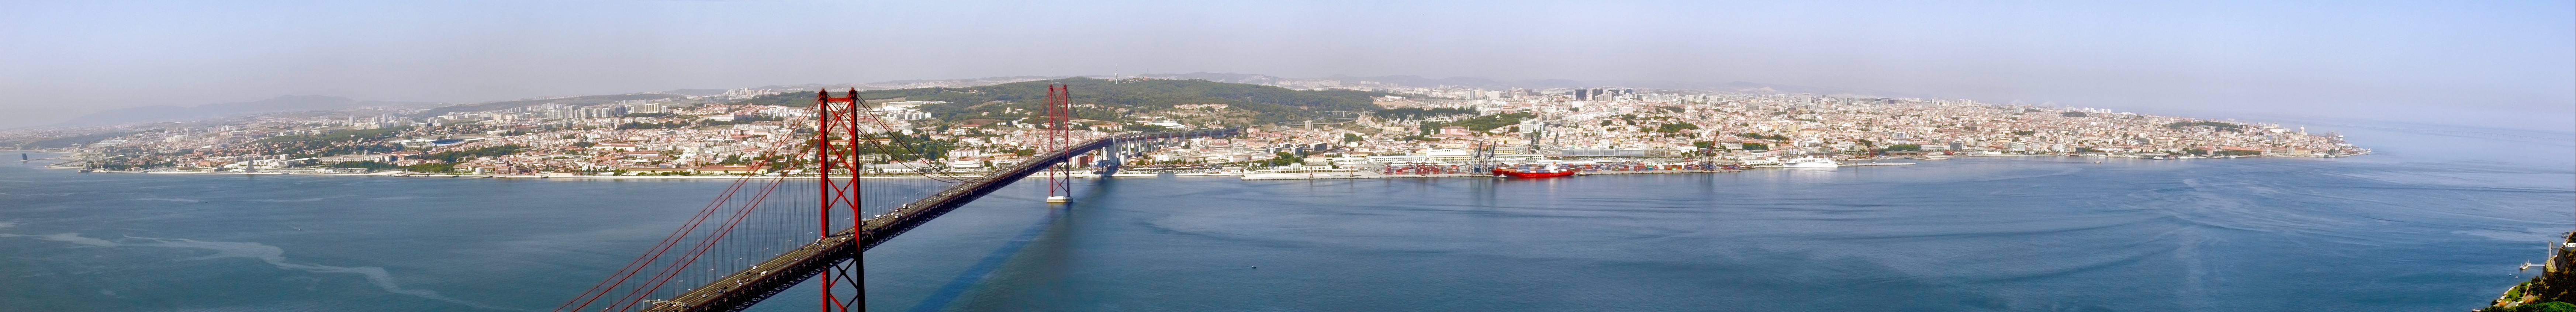 Lisboa-lisbon-_panorama.jpg